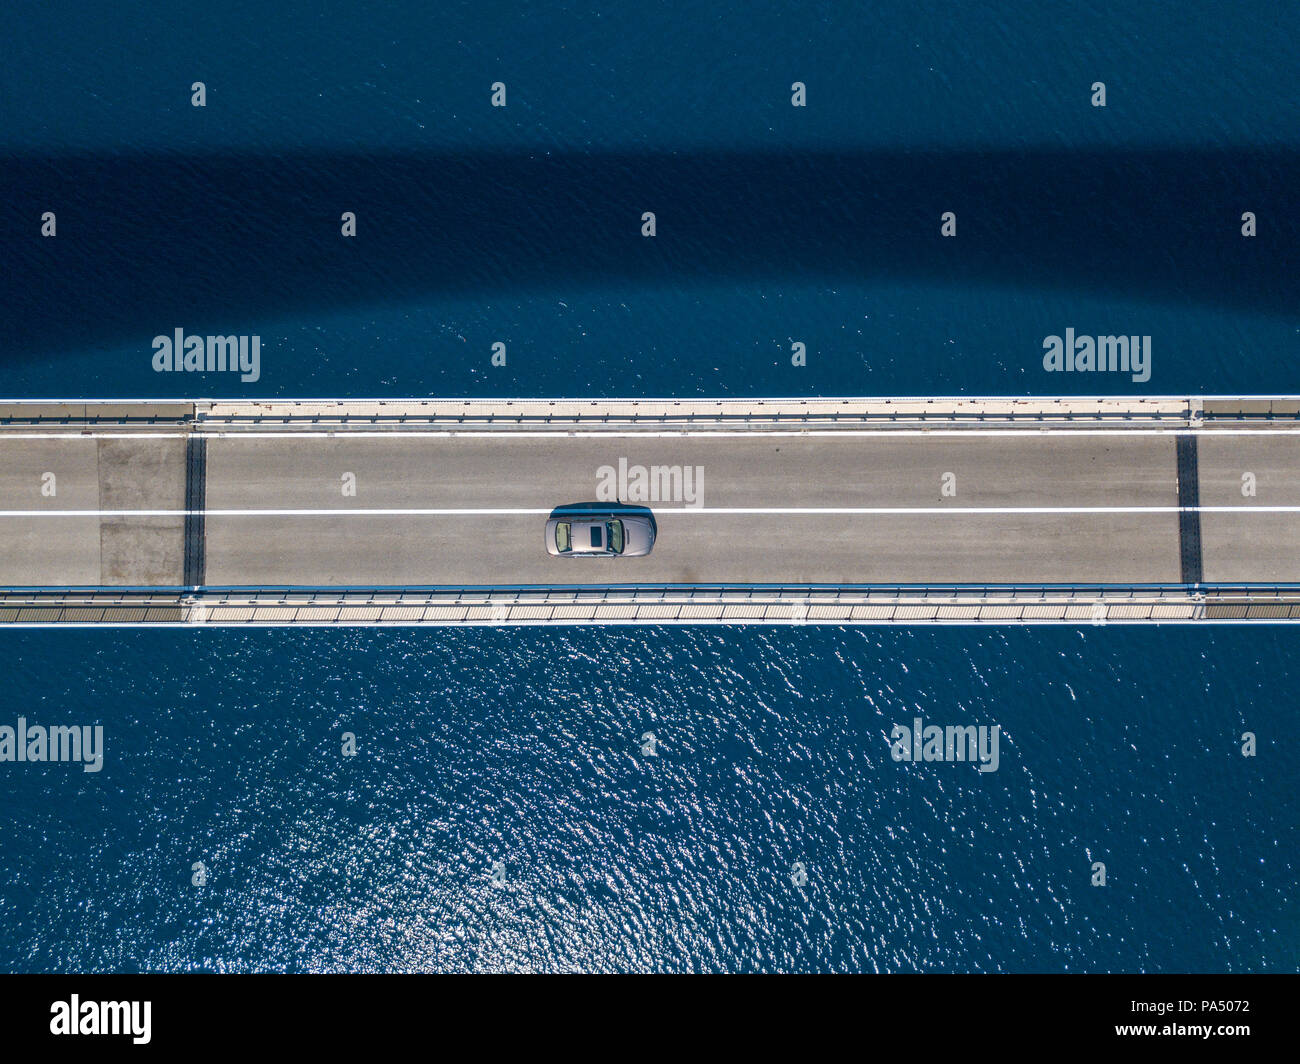 Vue aérienne du pont de l'île de Pag, Croatie, road. Falaise dominant la mer. Voitures traversant le pont vu d'en haut Banque D'Images